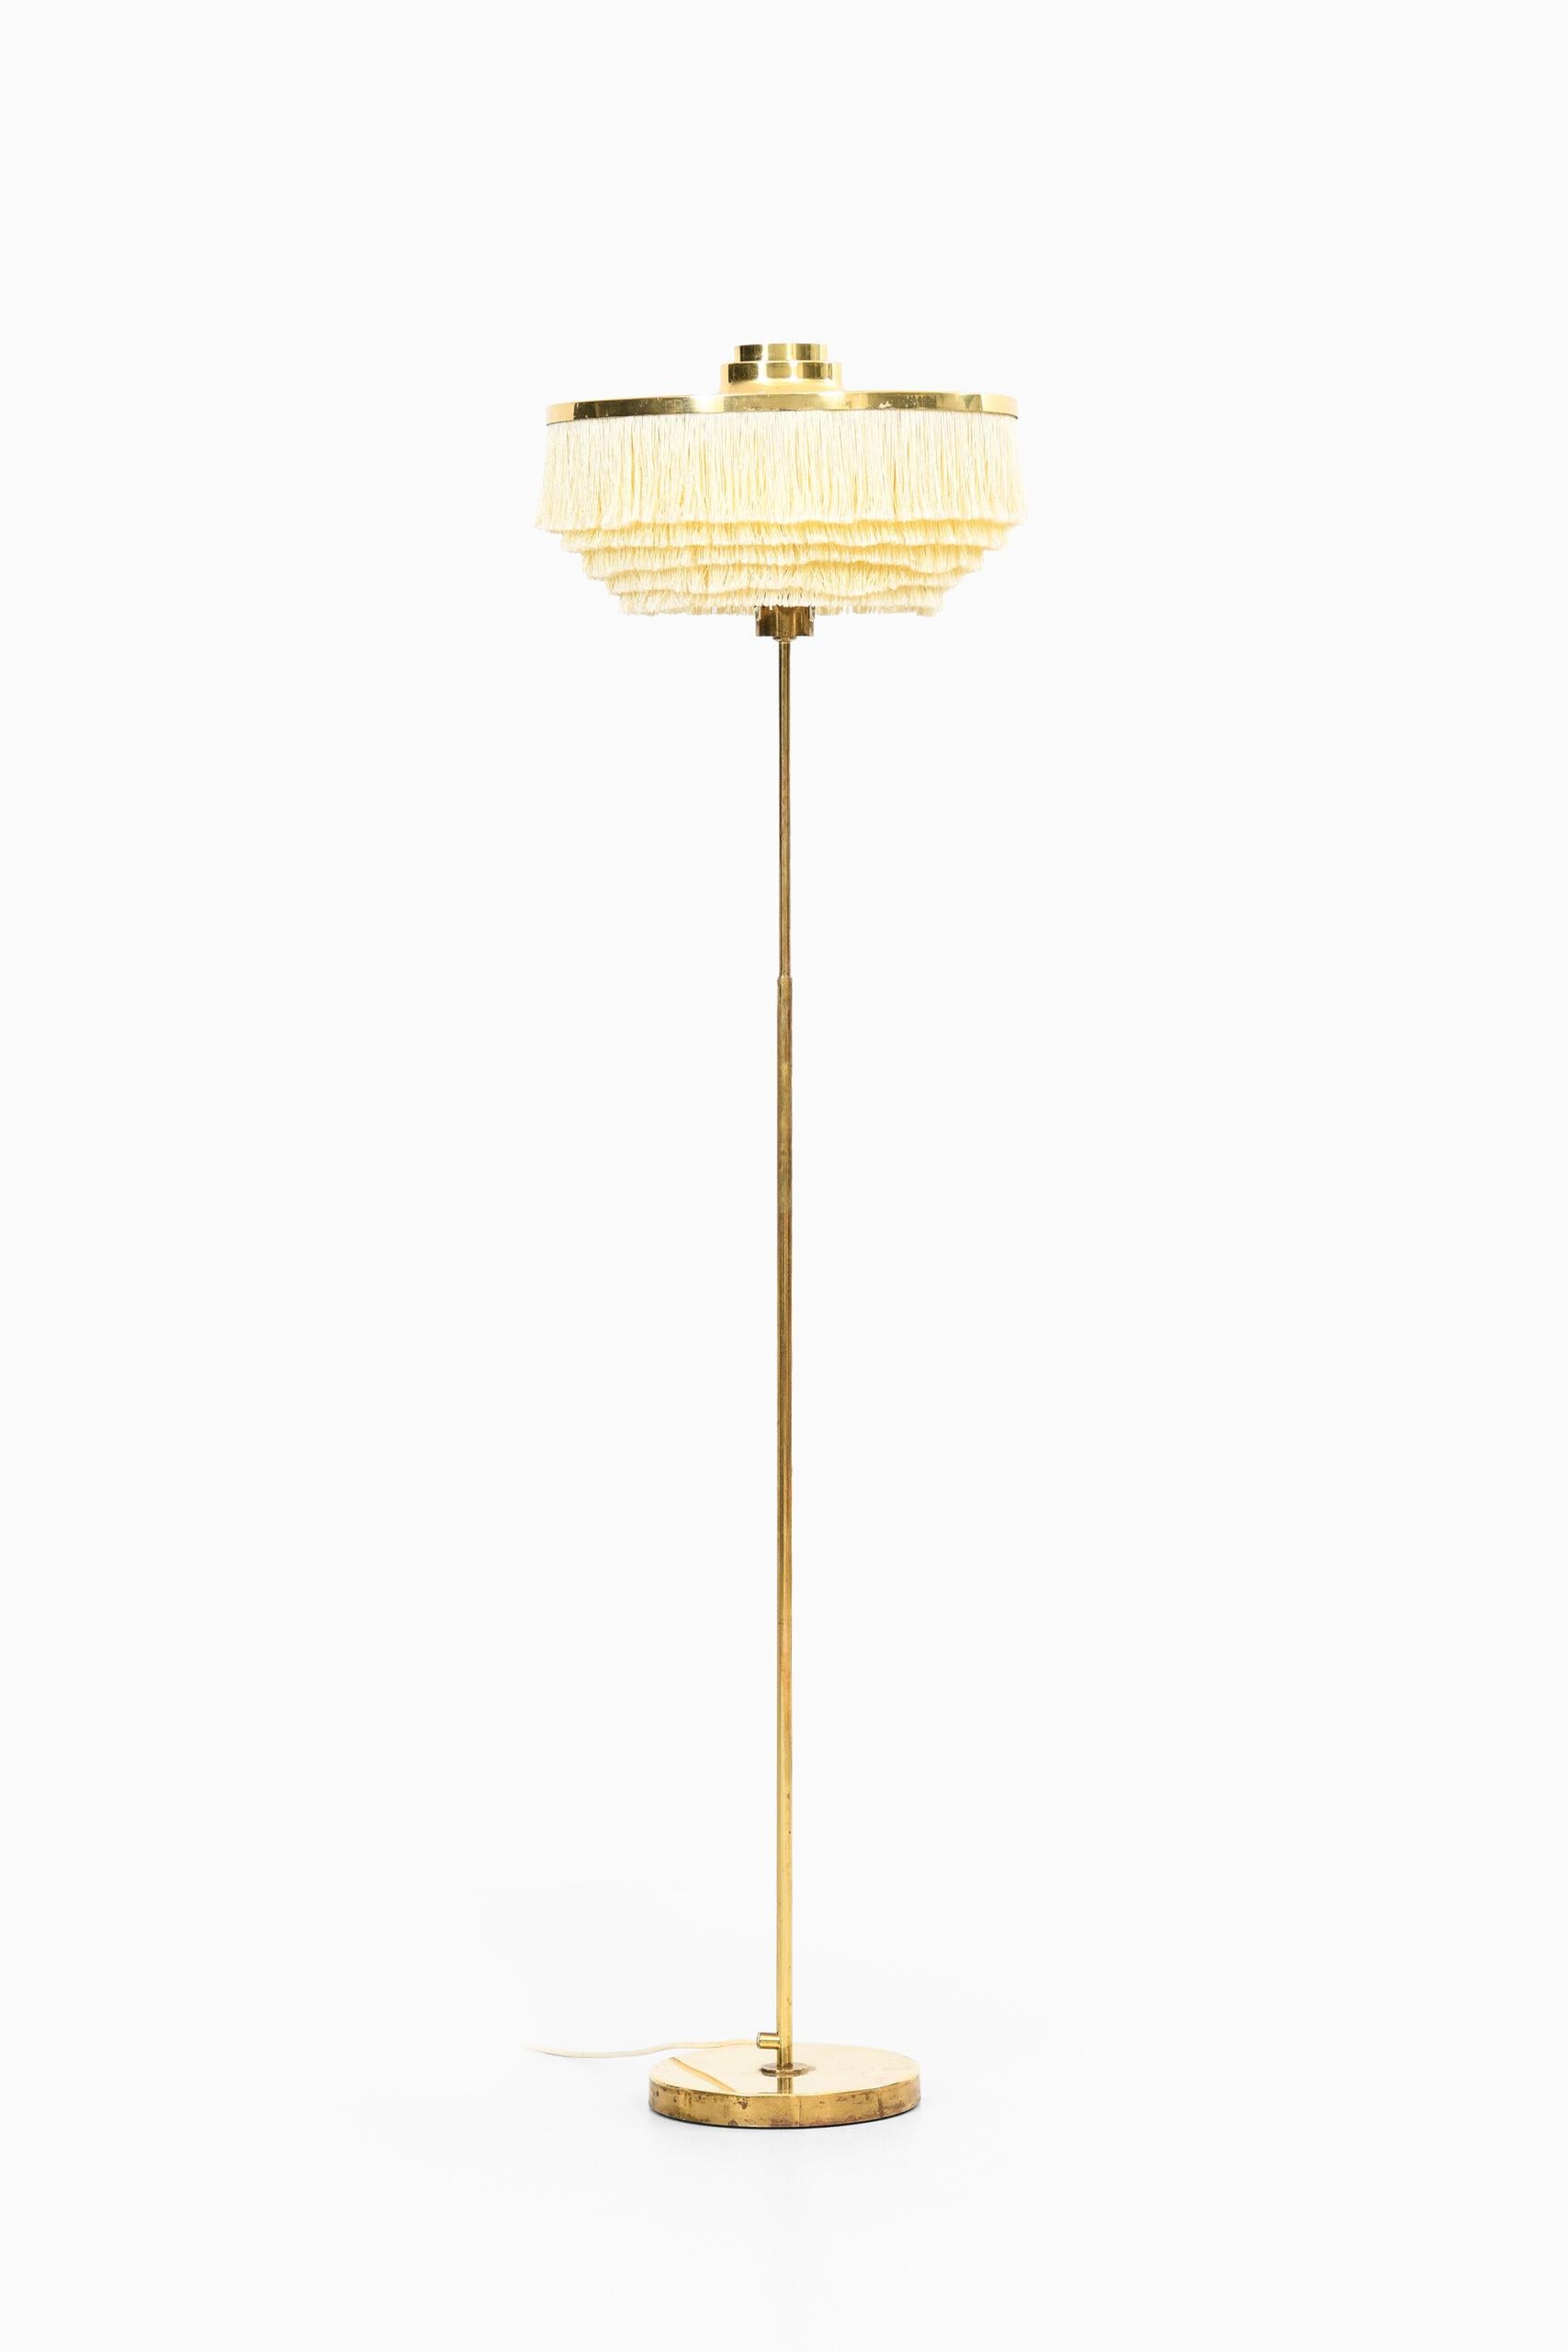 Brass Hans-Agne Jakobsson Floor Lamp Model G-110 by Hans-Agne Jakobsson AB in Markaryd